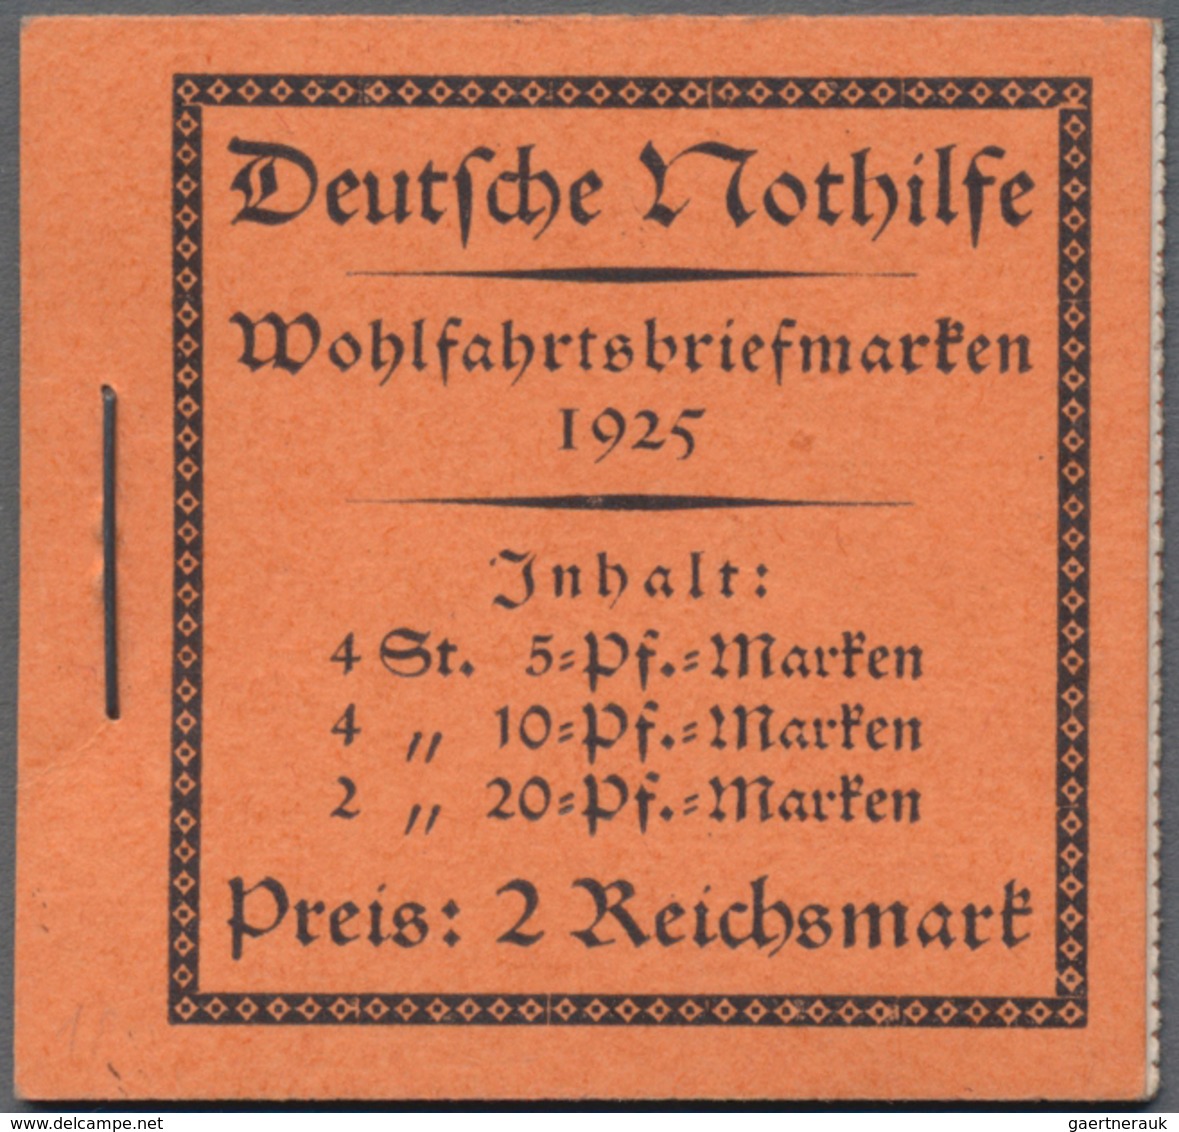 Deutsches Reich - Markenheftchen: 1919/1941, saubere Sammlung von 21 postfrischen Markenheftchen mit